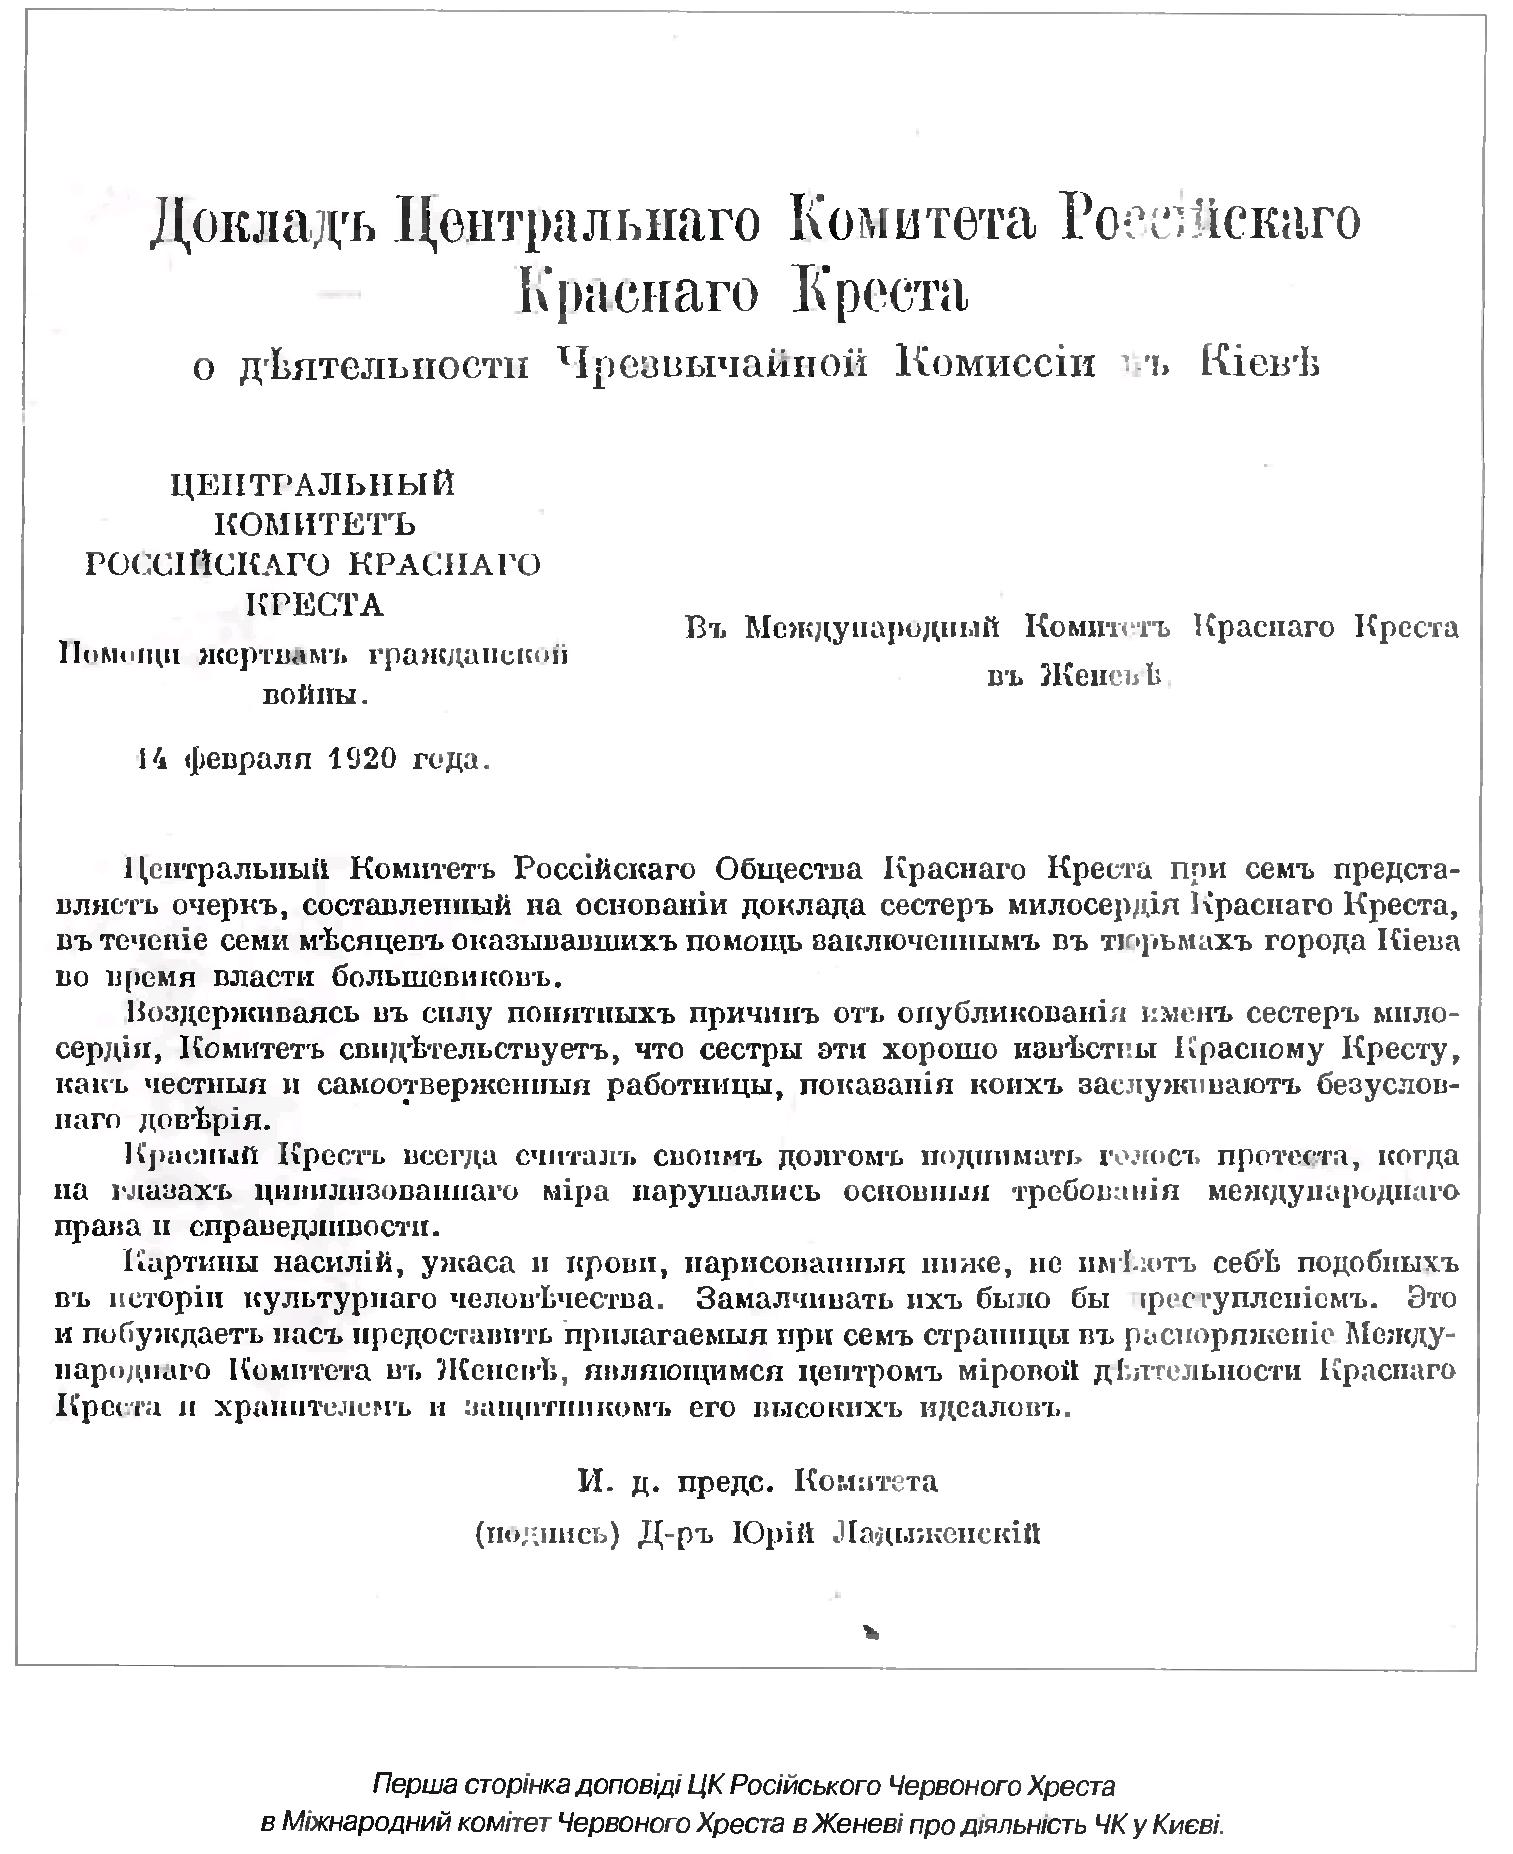  Титульный лист доклада Красного Креста о зверствах ЧК в Киеве в 1919 г.